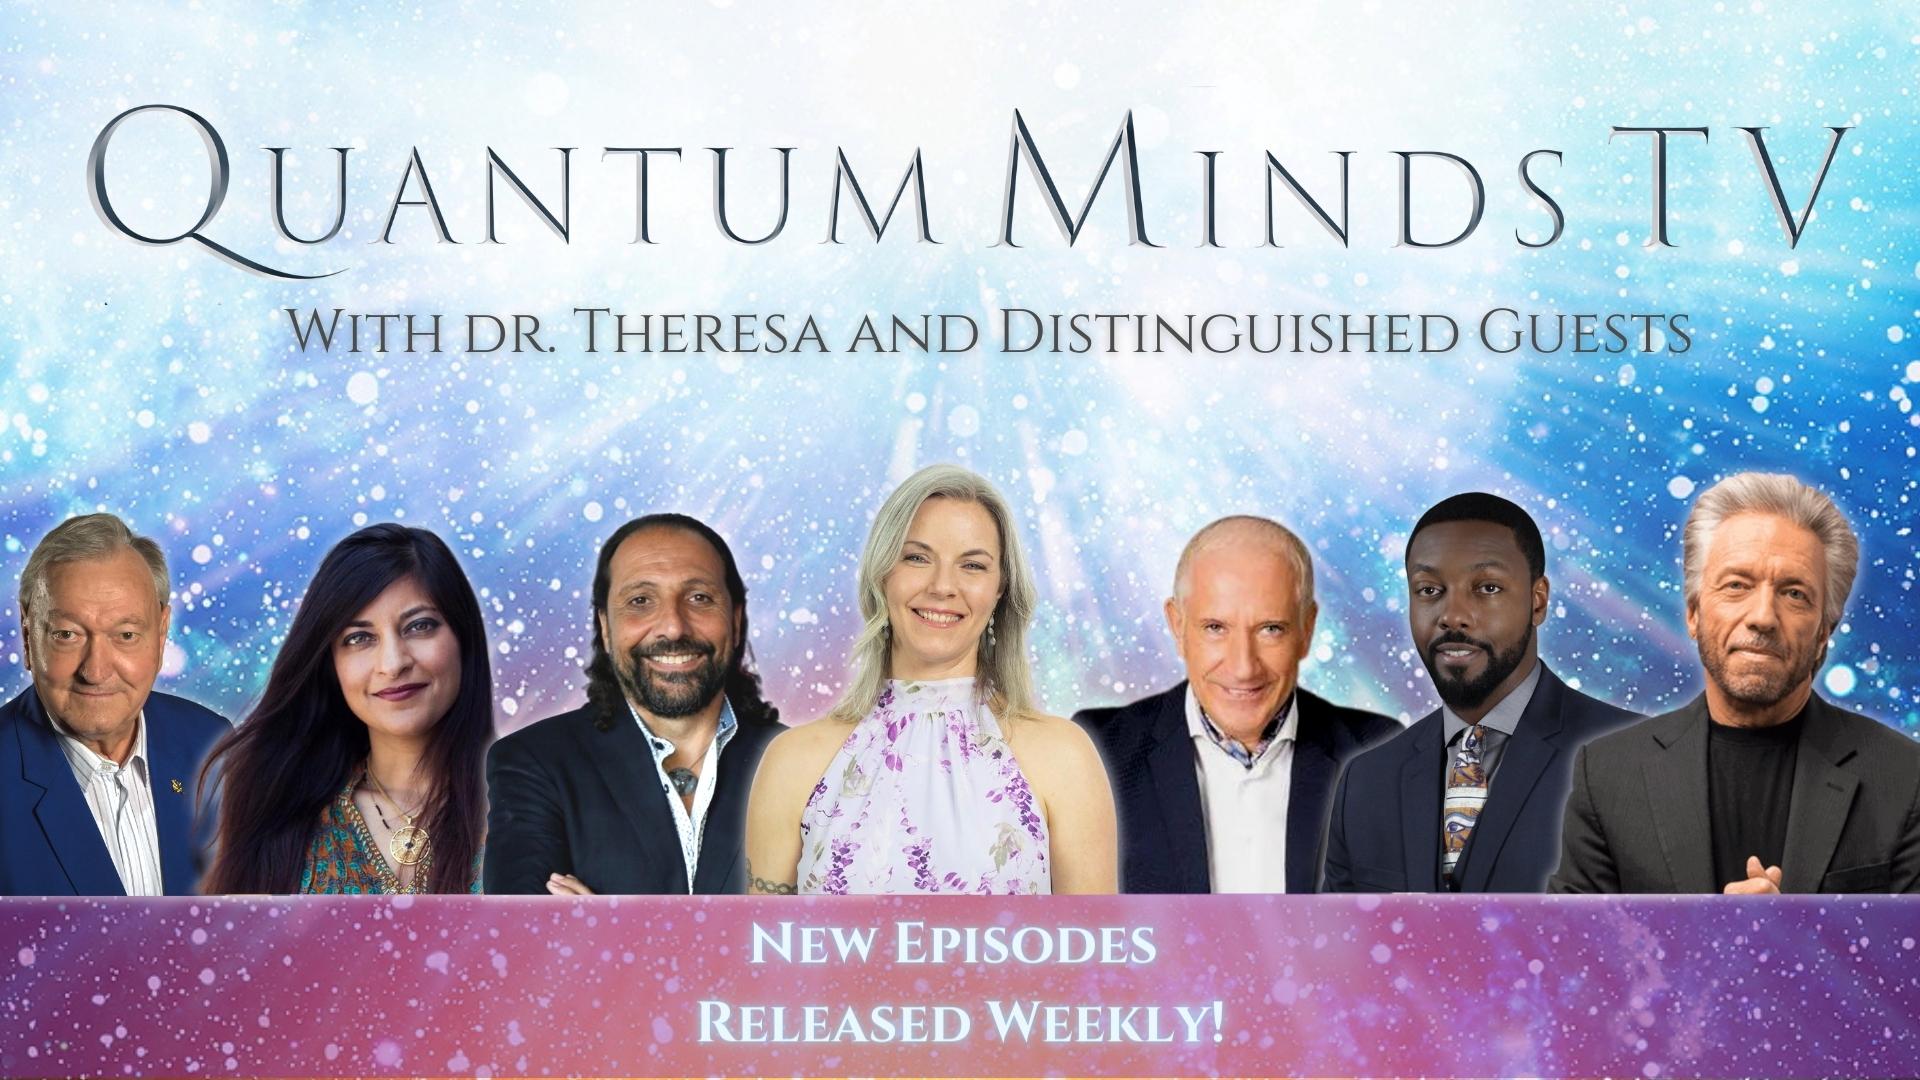 Quantum Minds TV, Dr. Theresa